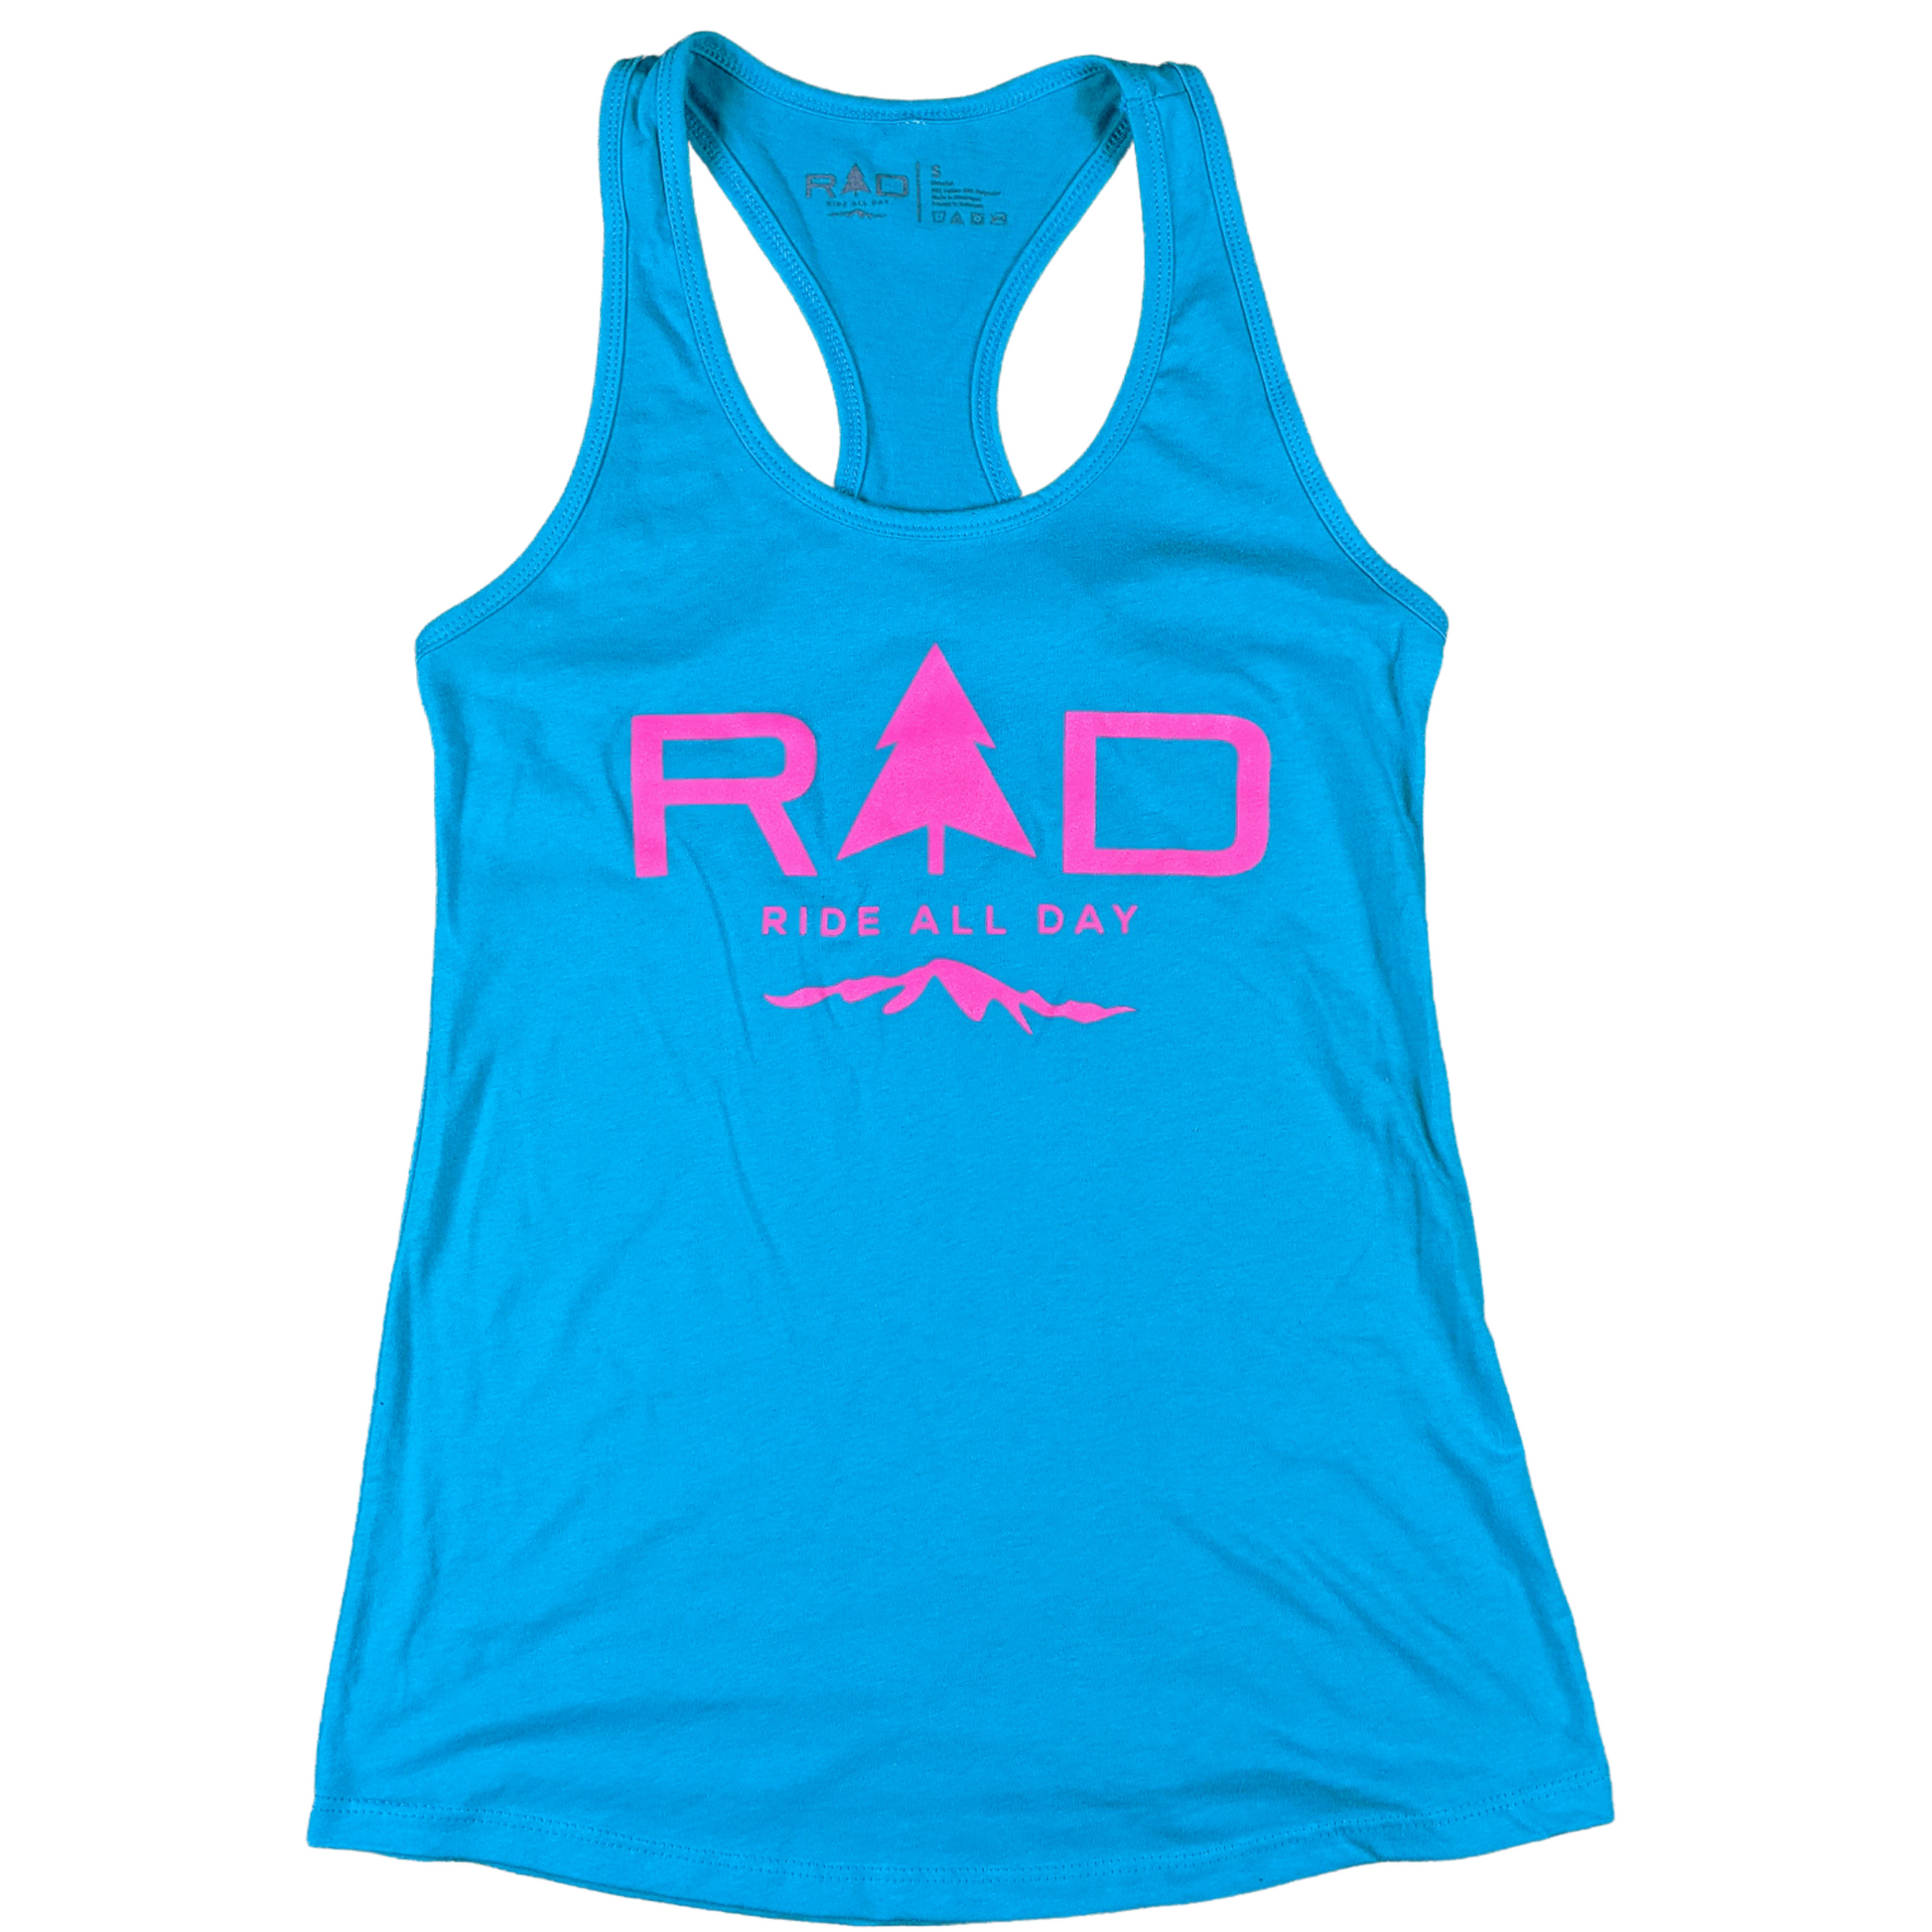 RAD ladies racerback tank top in blue and pink